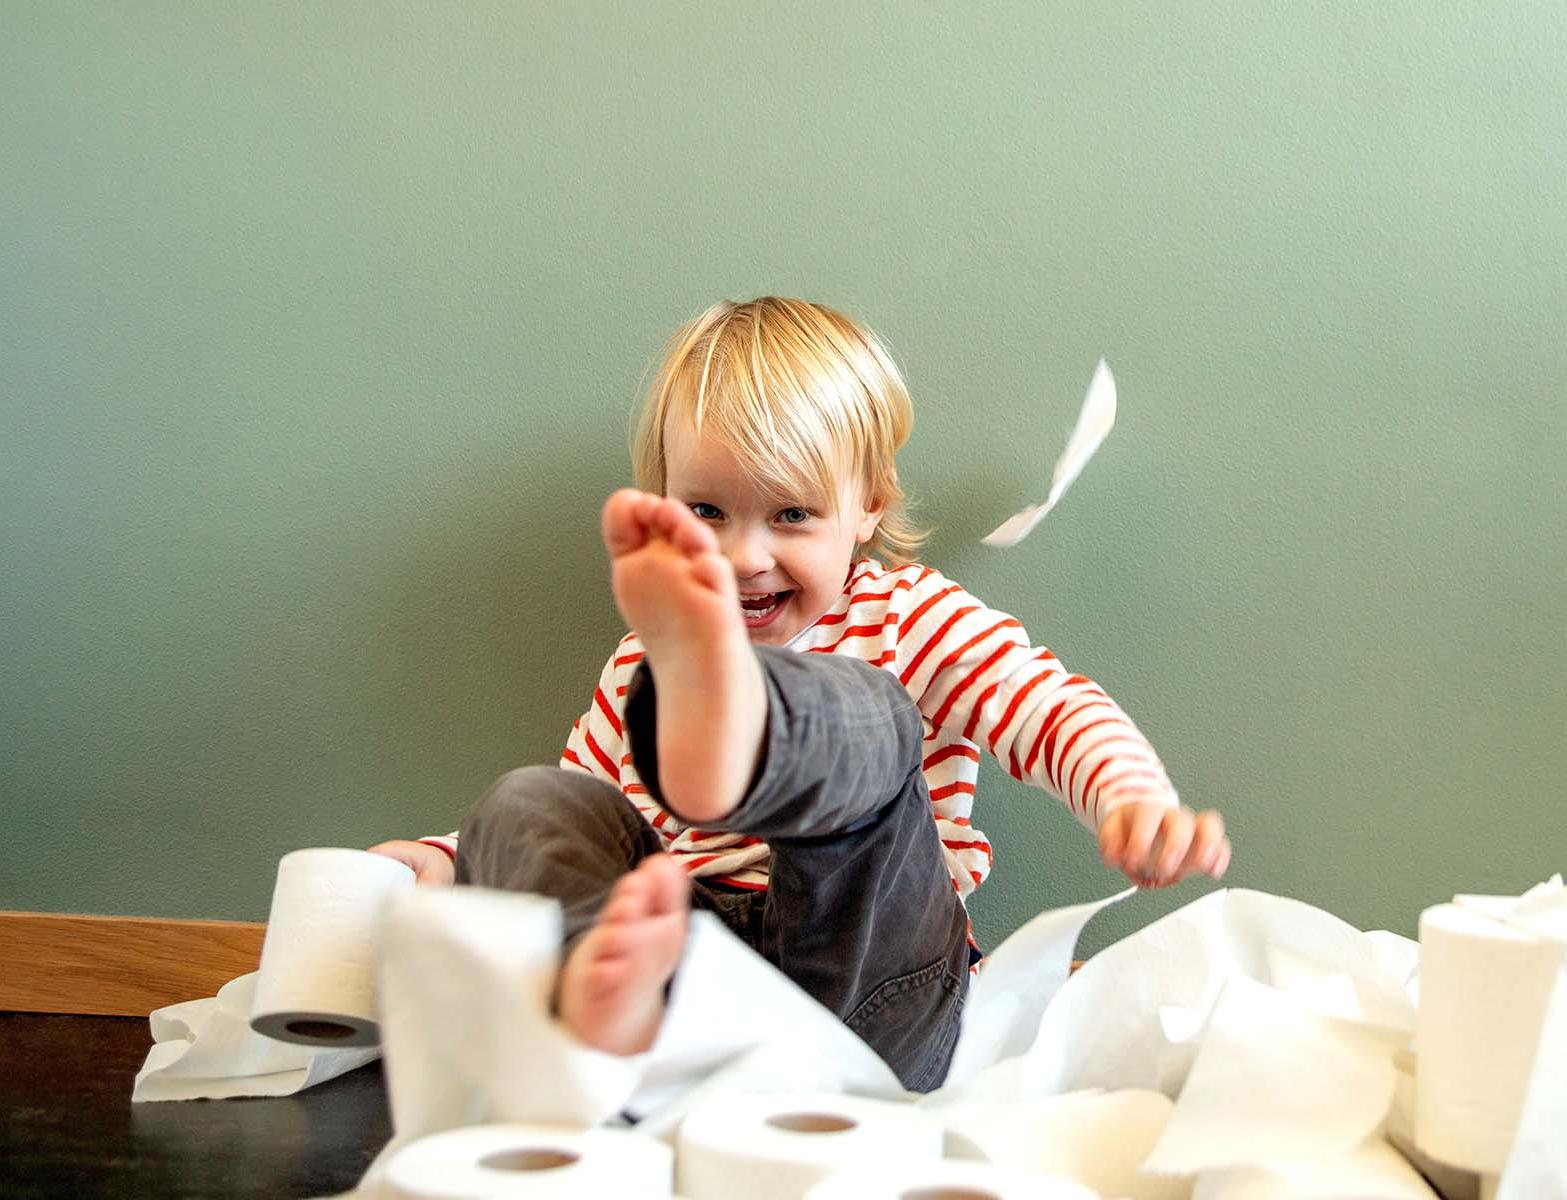 一个蹒跚学步的孩子高兴地乱扔卫生纸.